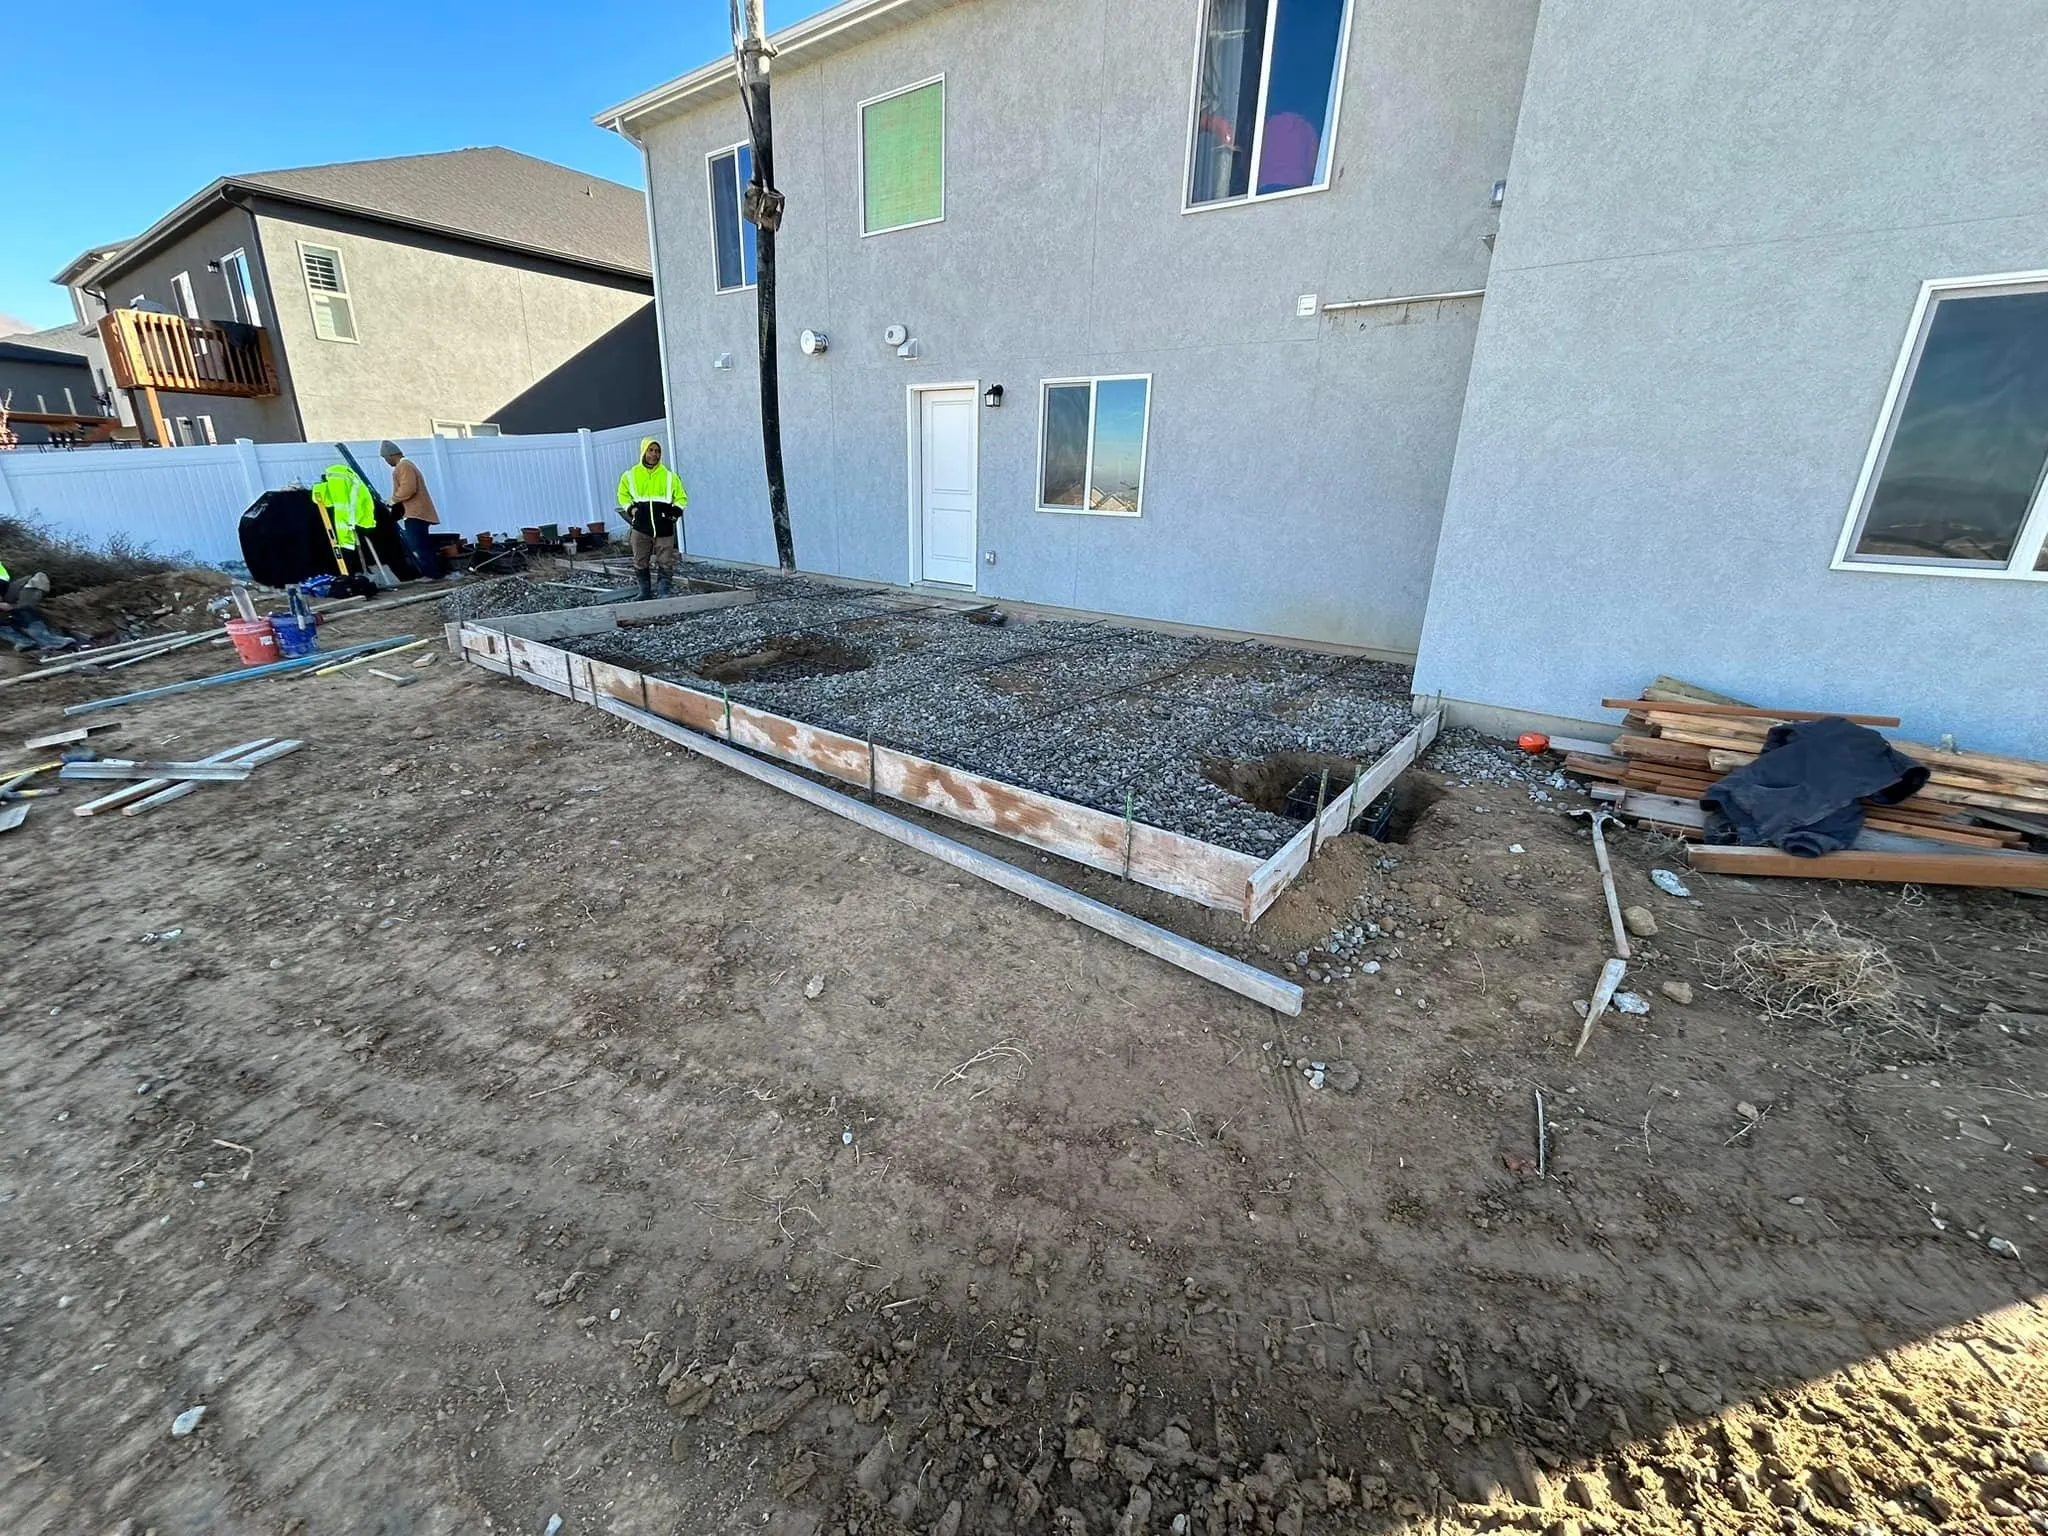 Сoncrete for Hifo Construction in Spanish Fork, UT